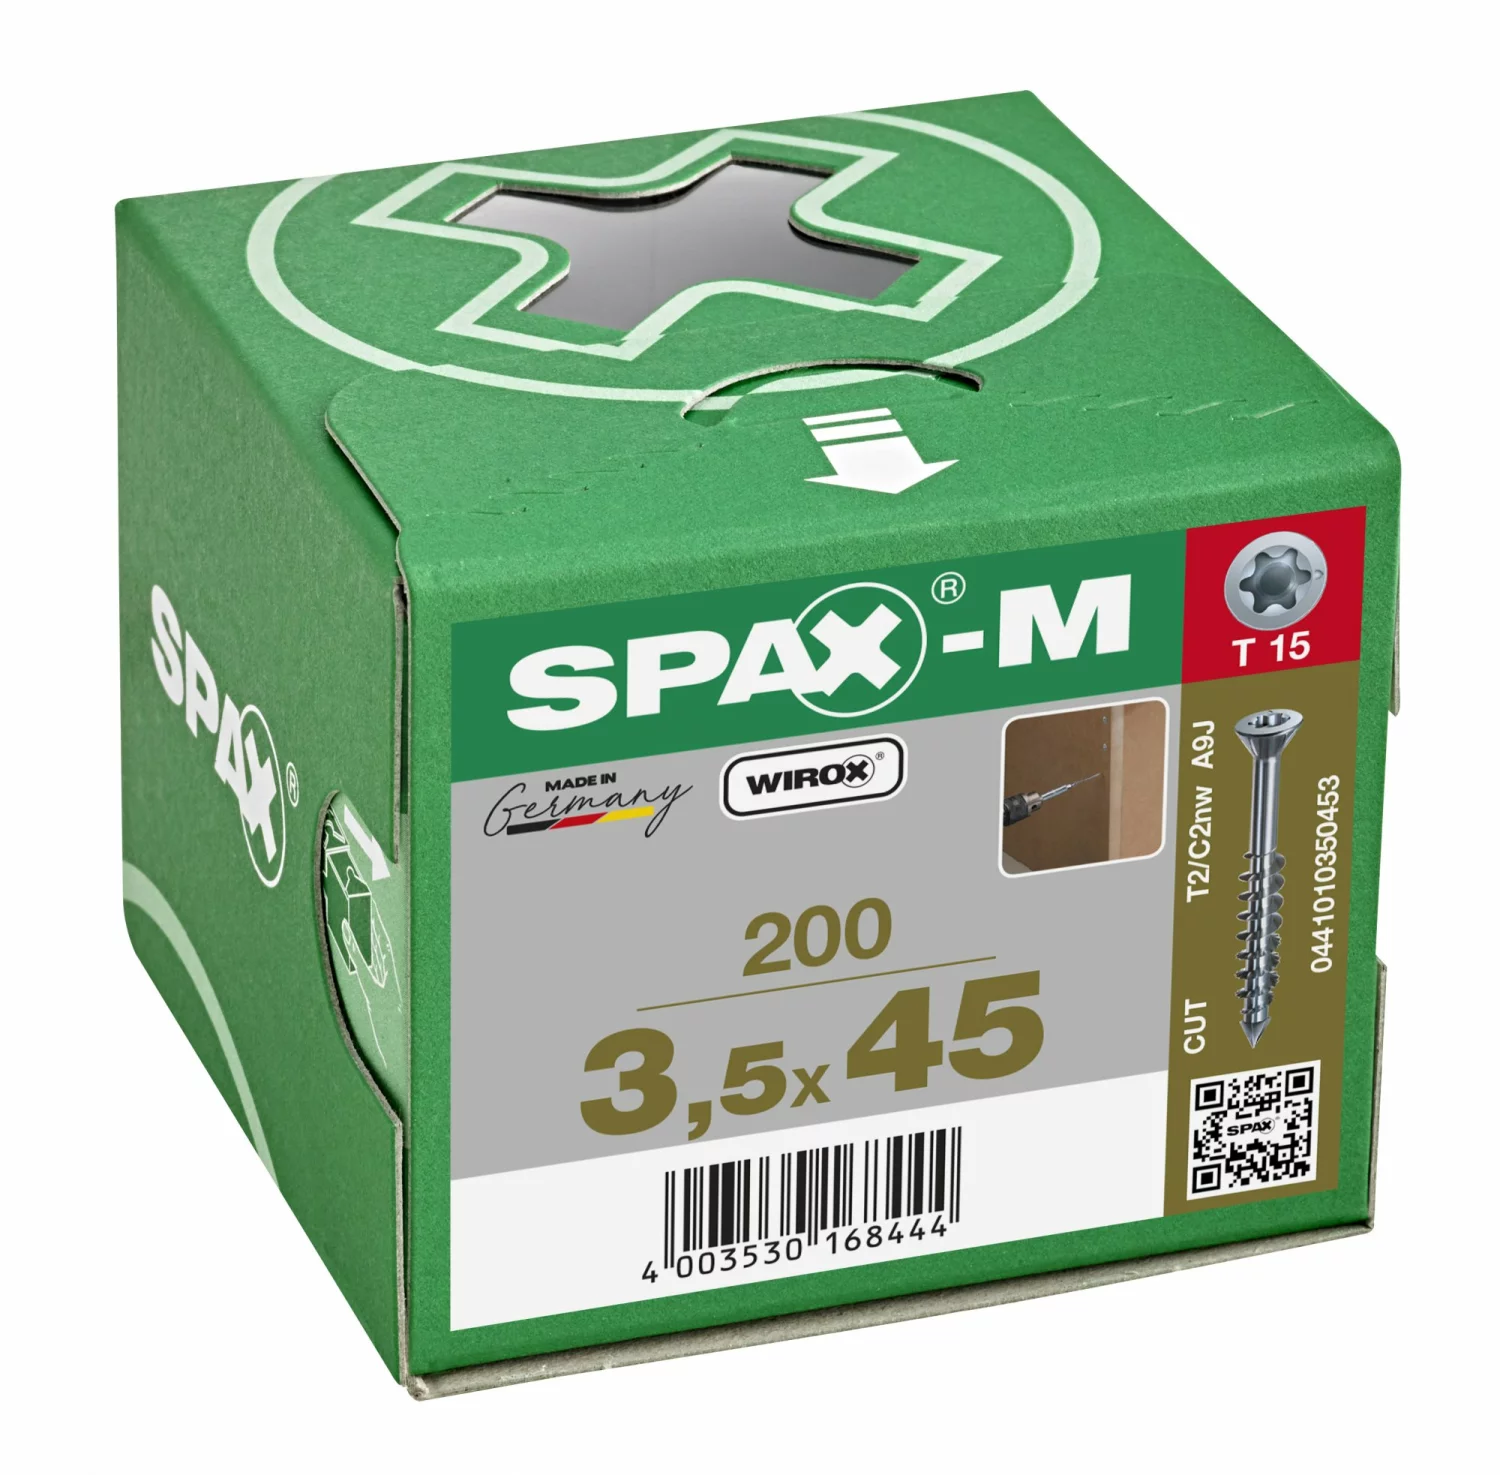 SPAX-M 441010350453 Schroef, Verzonken kop, 3.5 x 45, Deeldraad, T-STAR plus TX15 - WIROX - 200 stuks-image